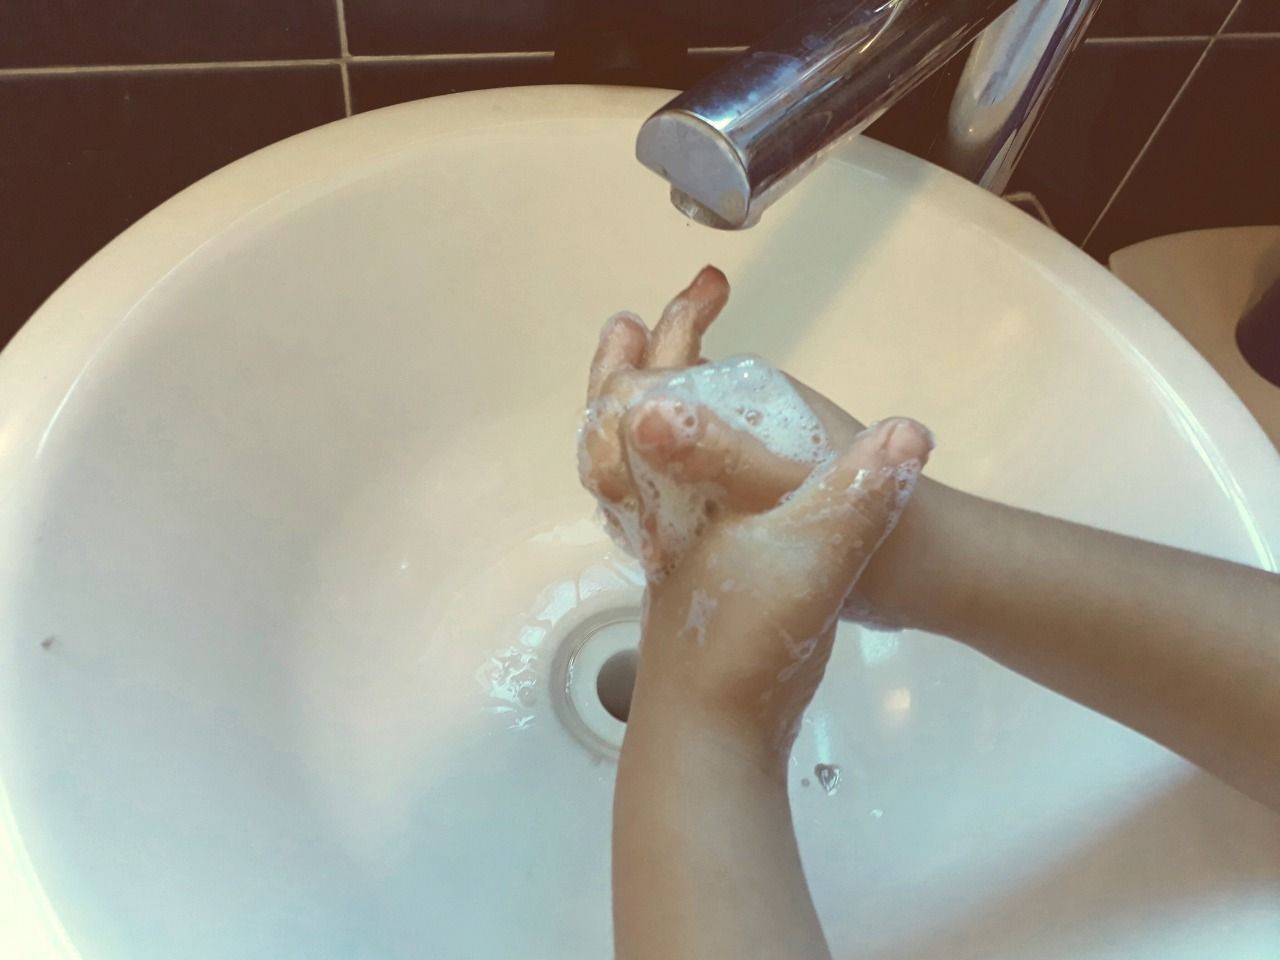 La correcta técnica de lavado de manos ayuda a prevenir contagios y enfermedades